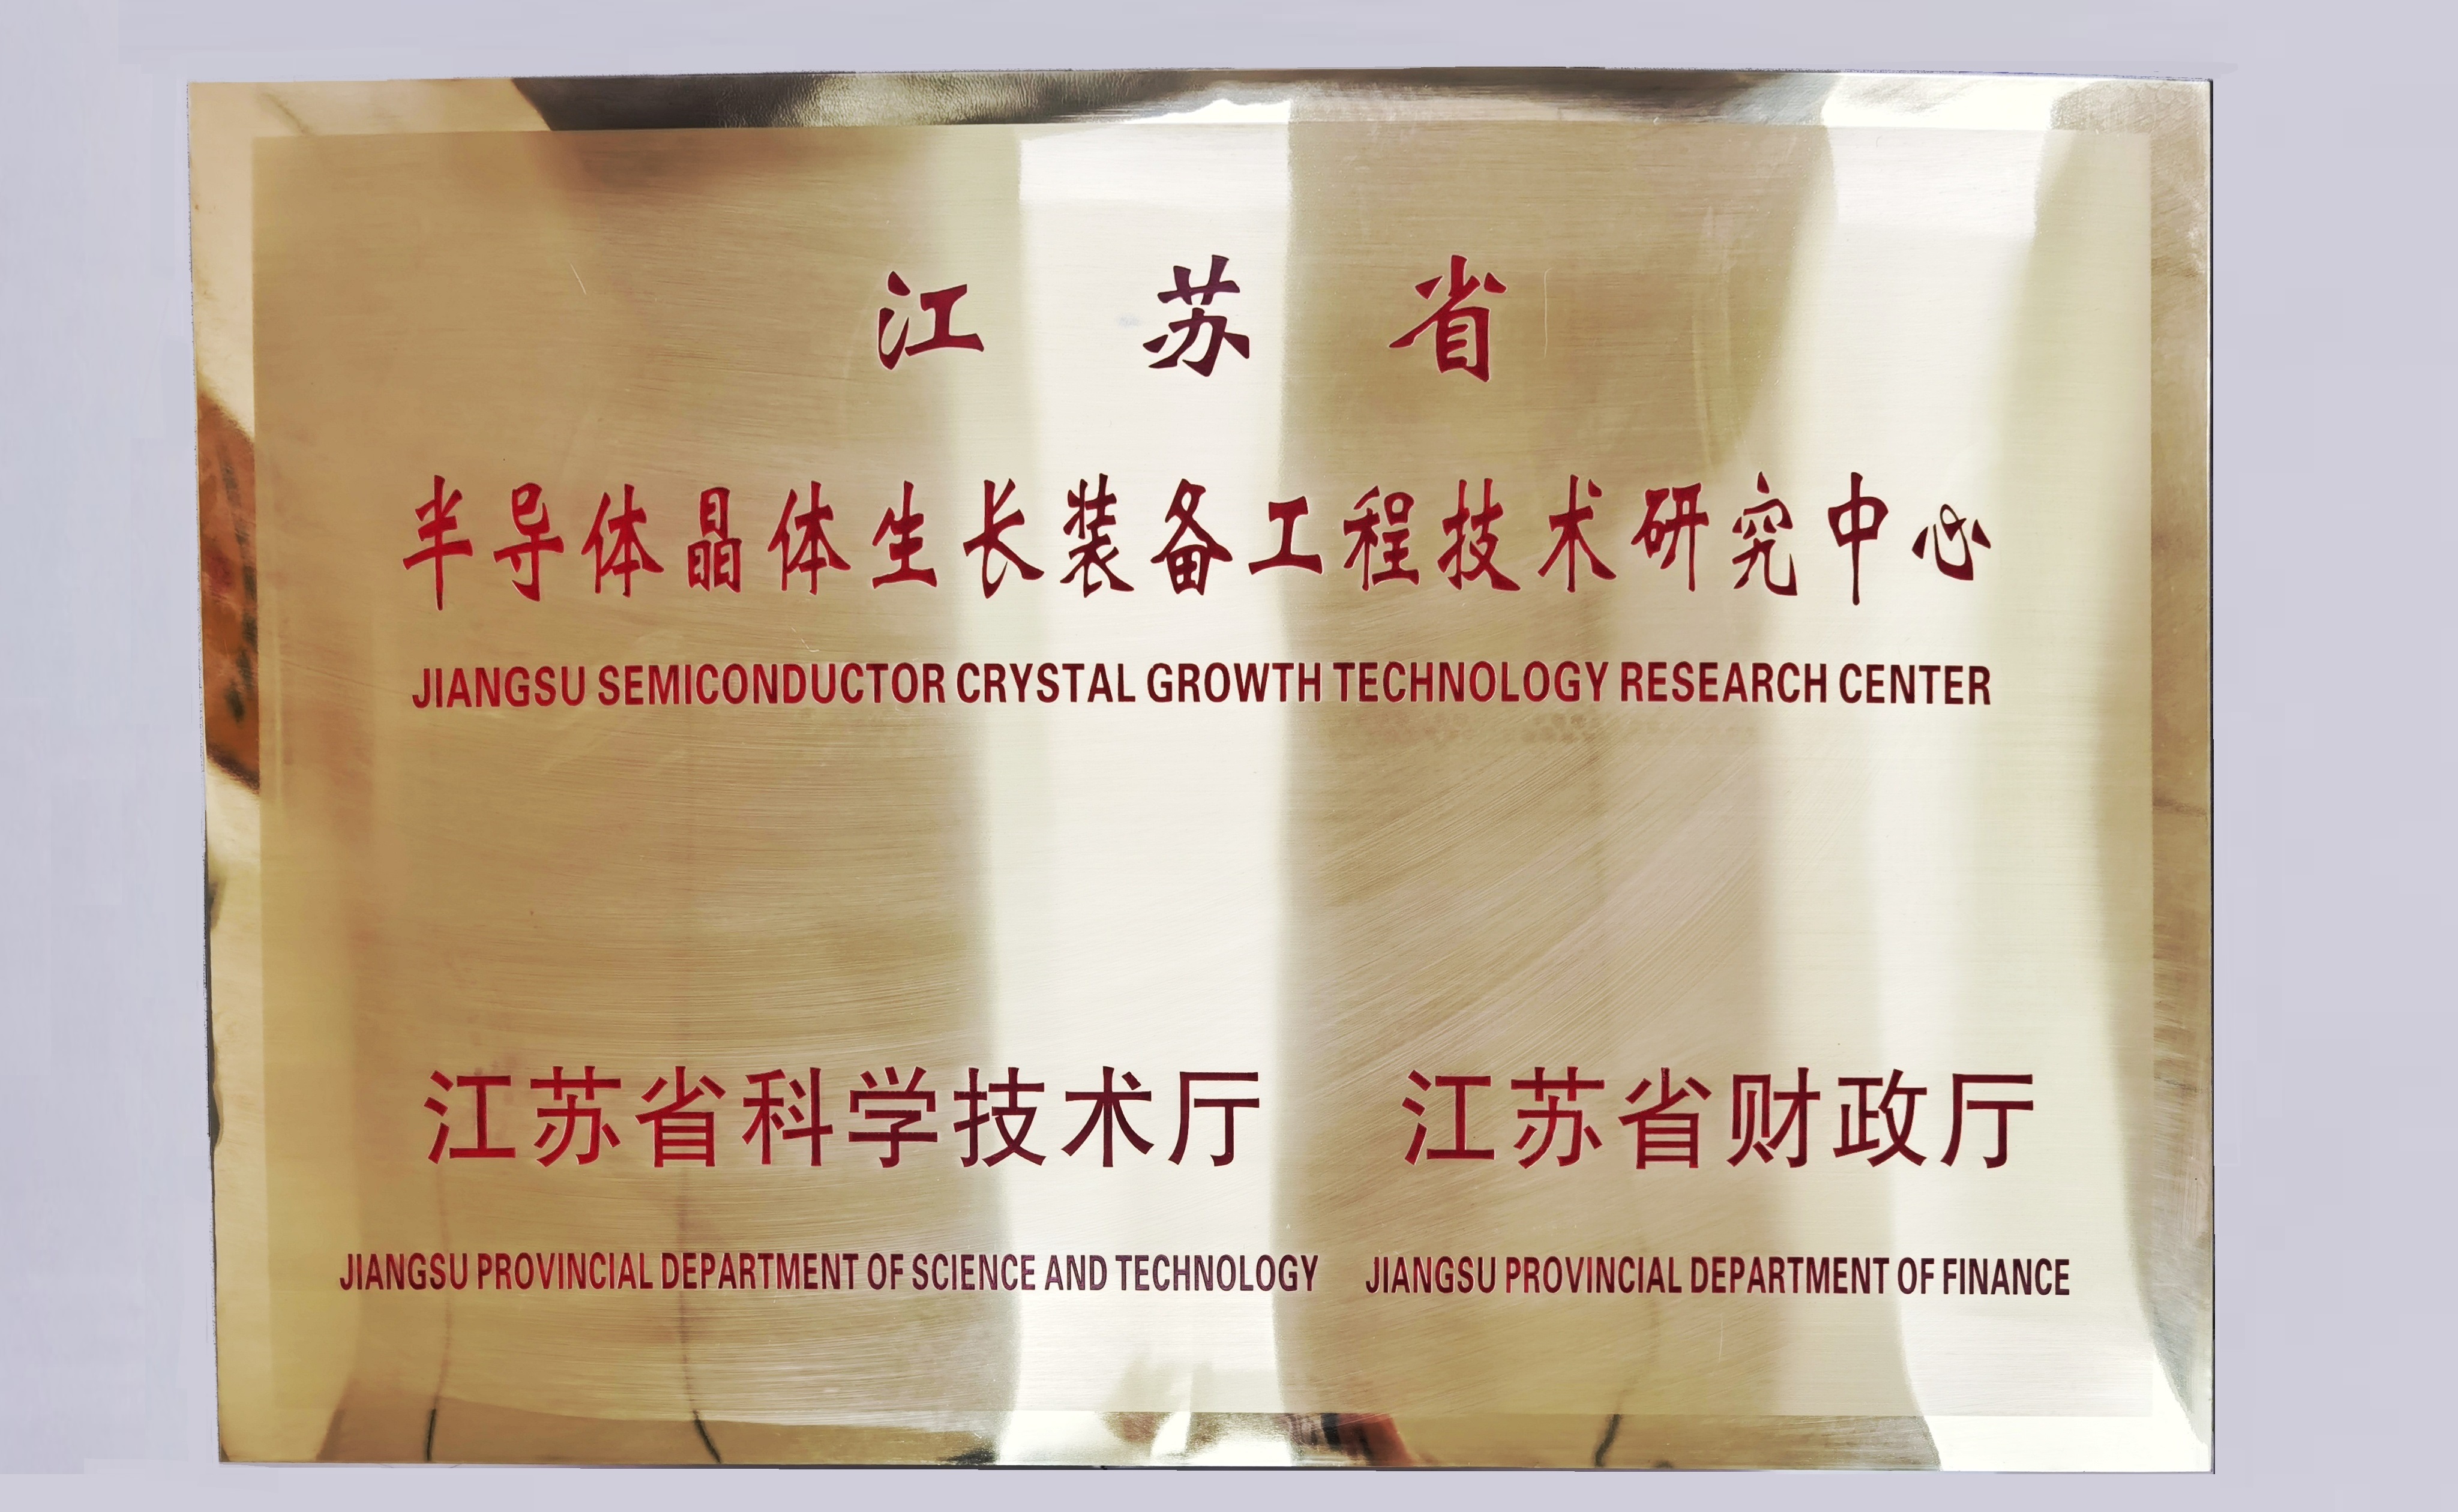 江苏省半导体晶体生长装备工程技术研究中心